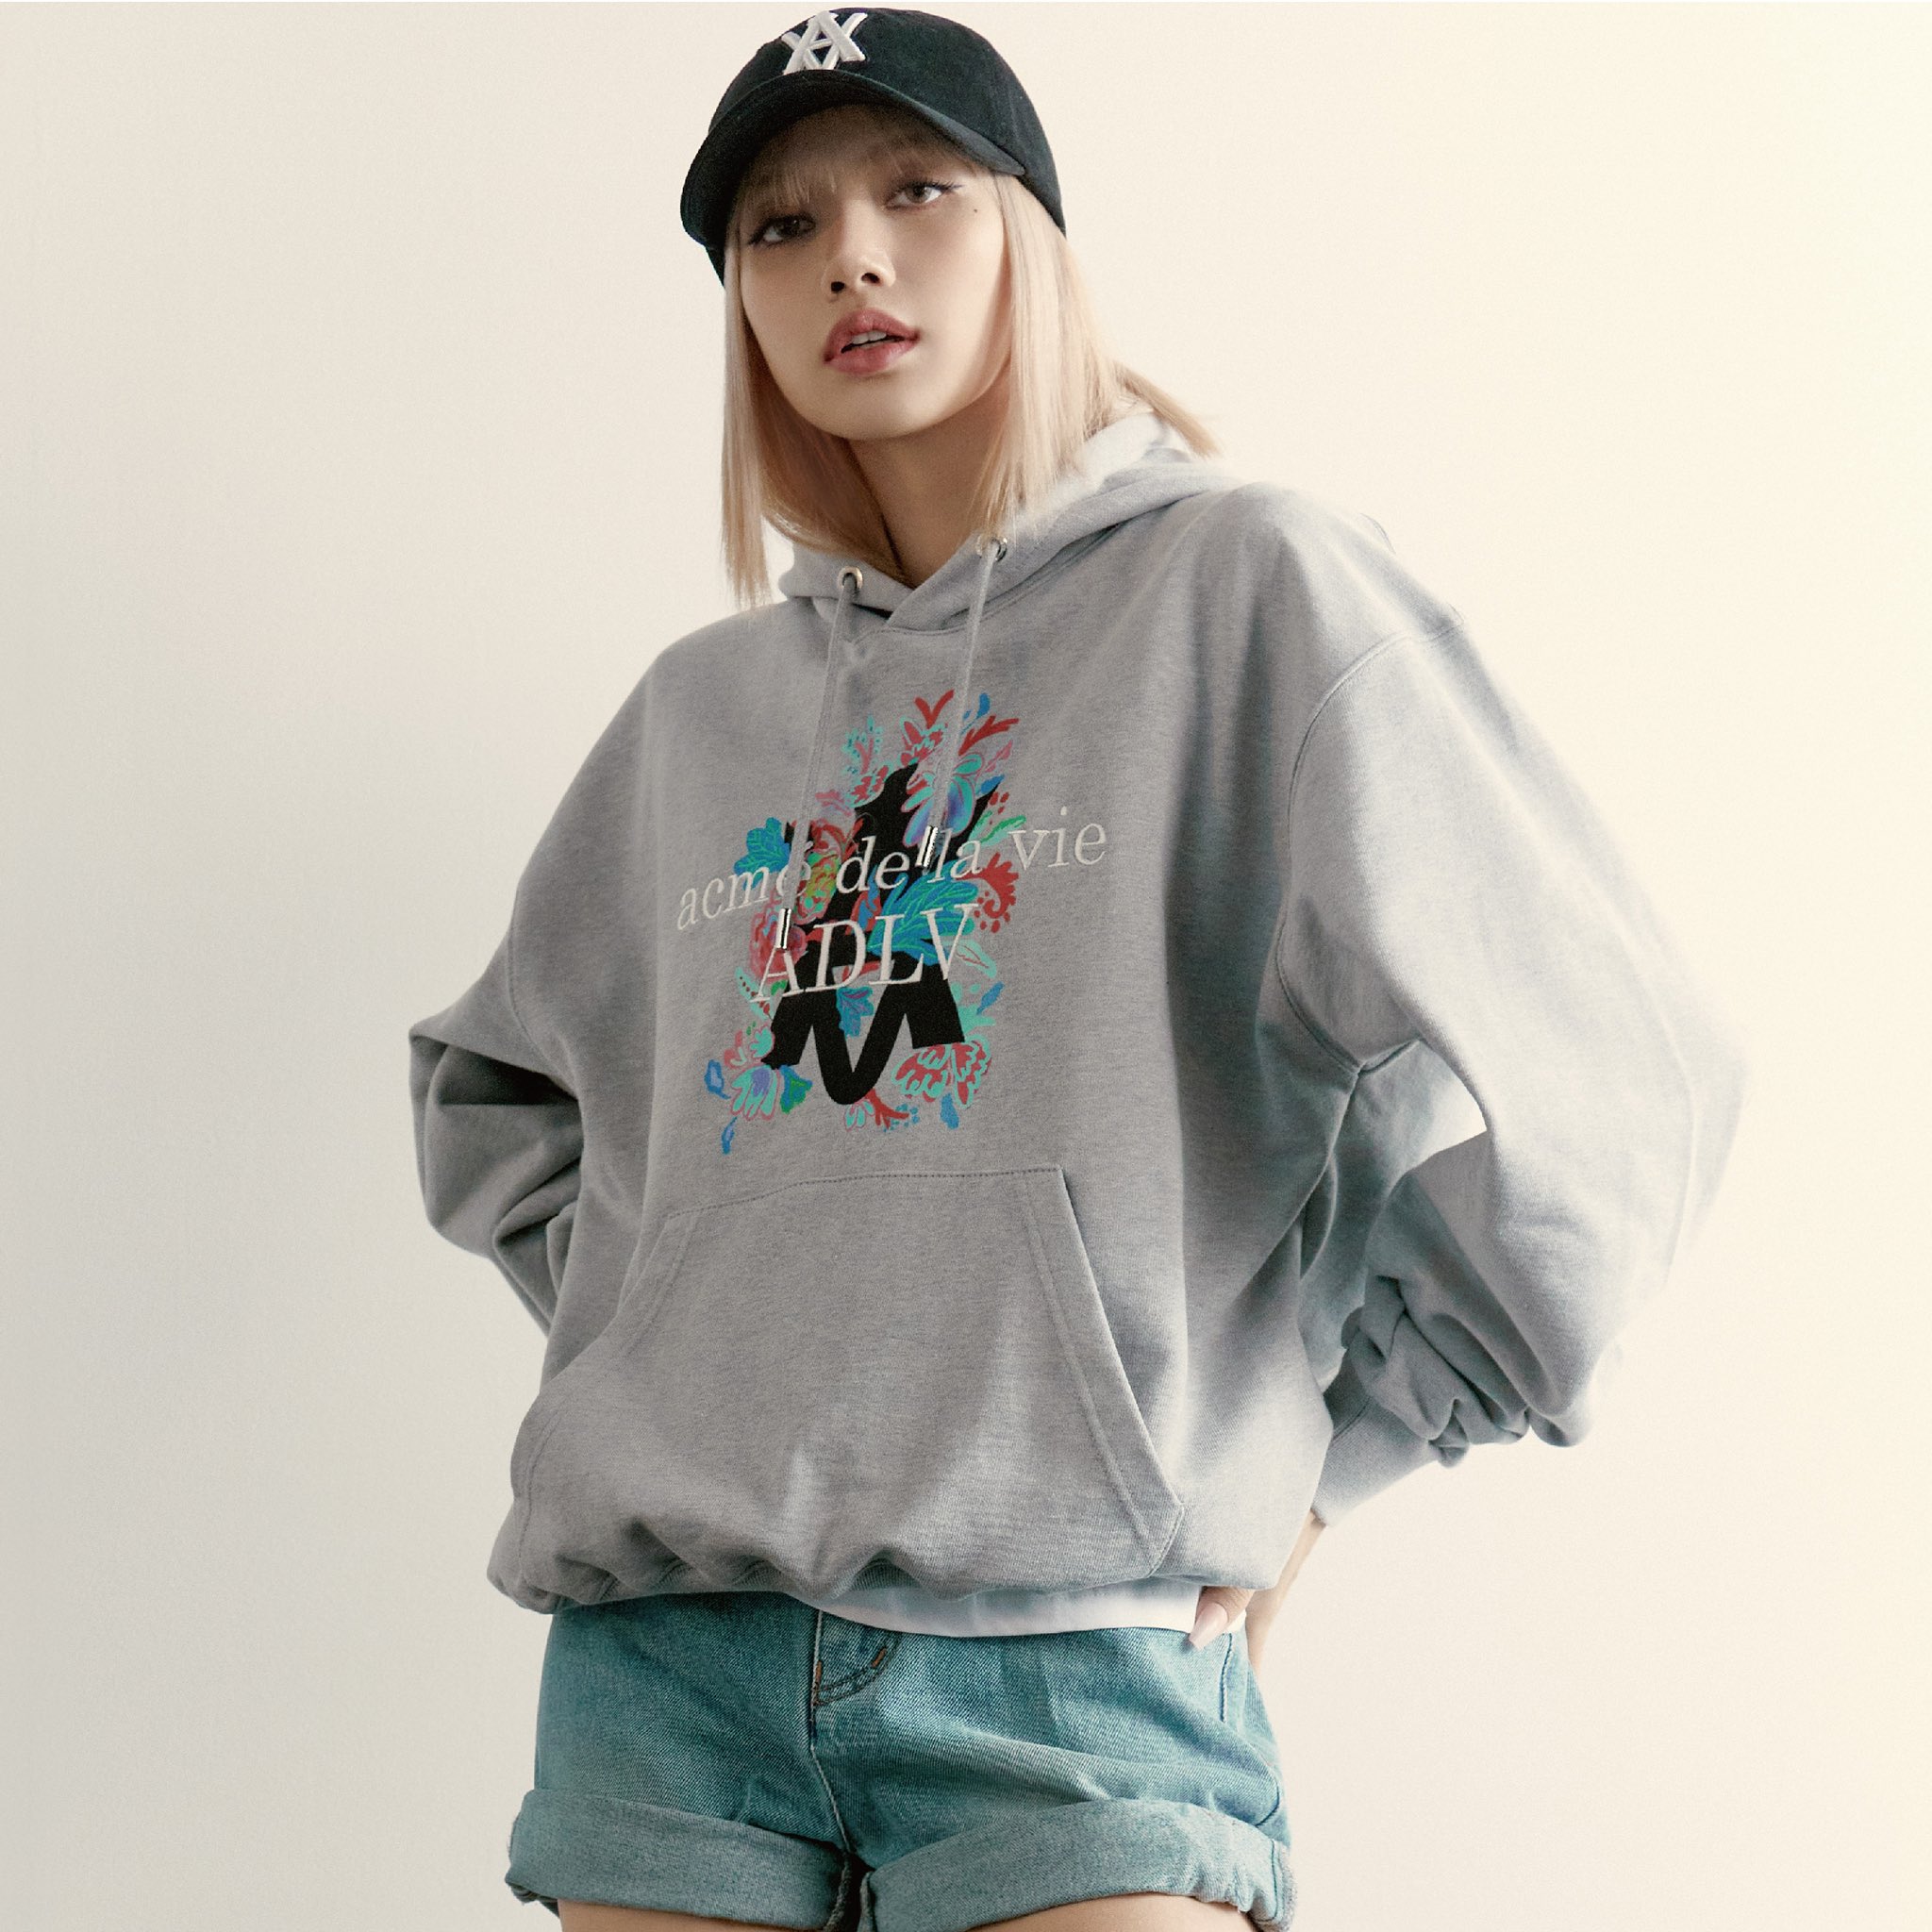 BLACKPINK Lisa acmé de la vie (ADLV) Korean Streetwear Brand